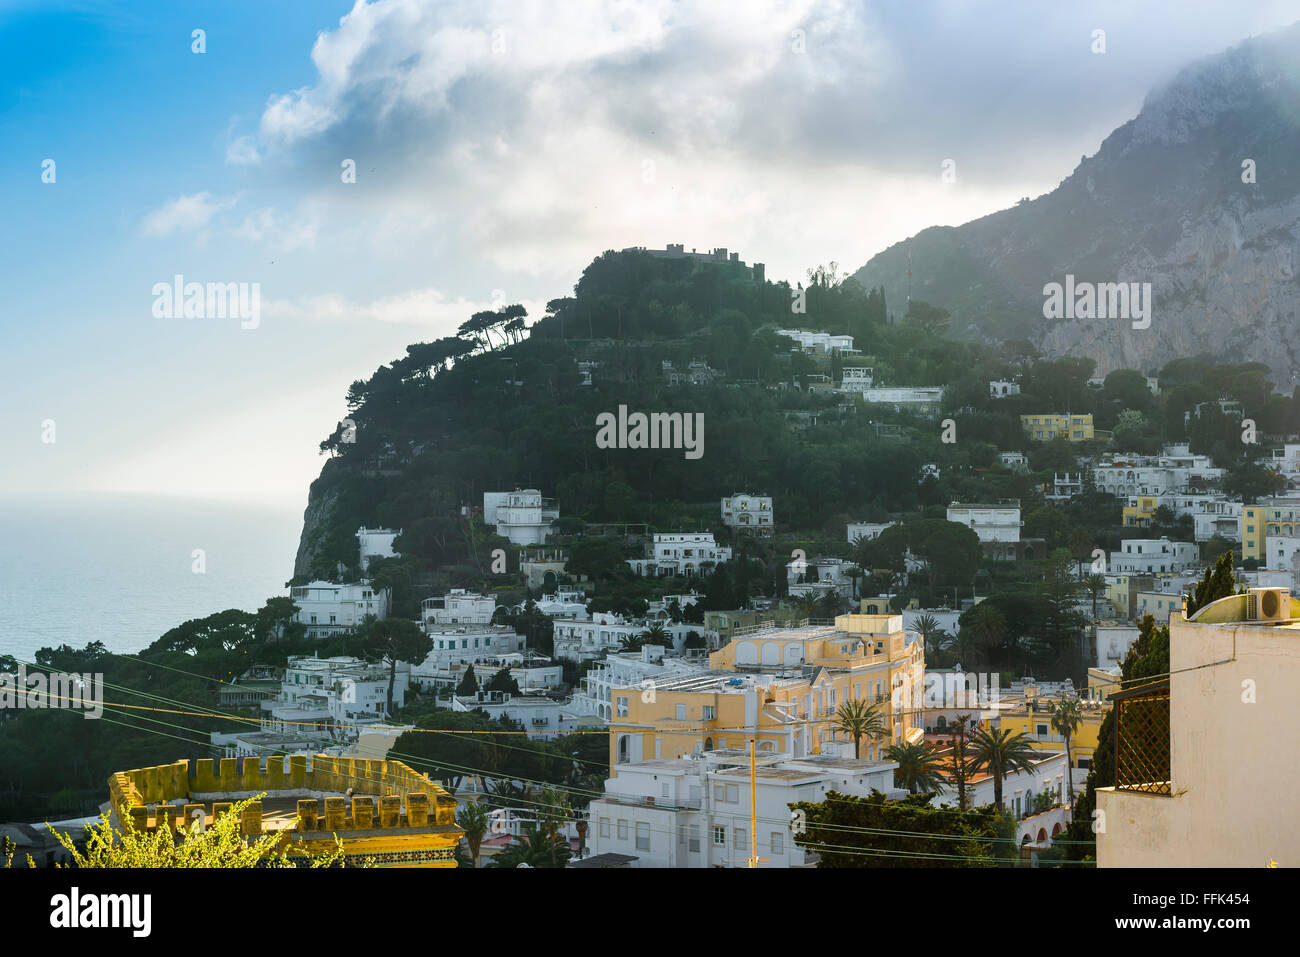 Capri Italia, vista estiva di ville situate su una ripida collina sull'isola di Capri. Foto Stock